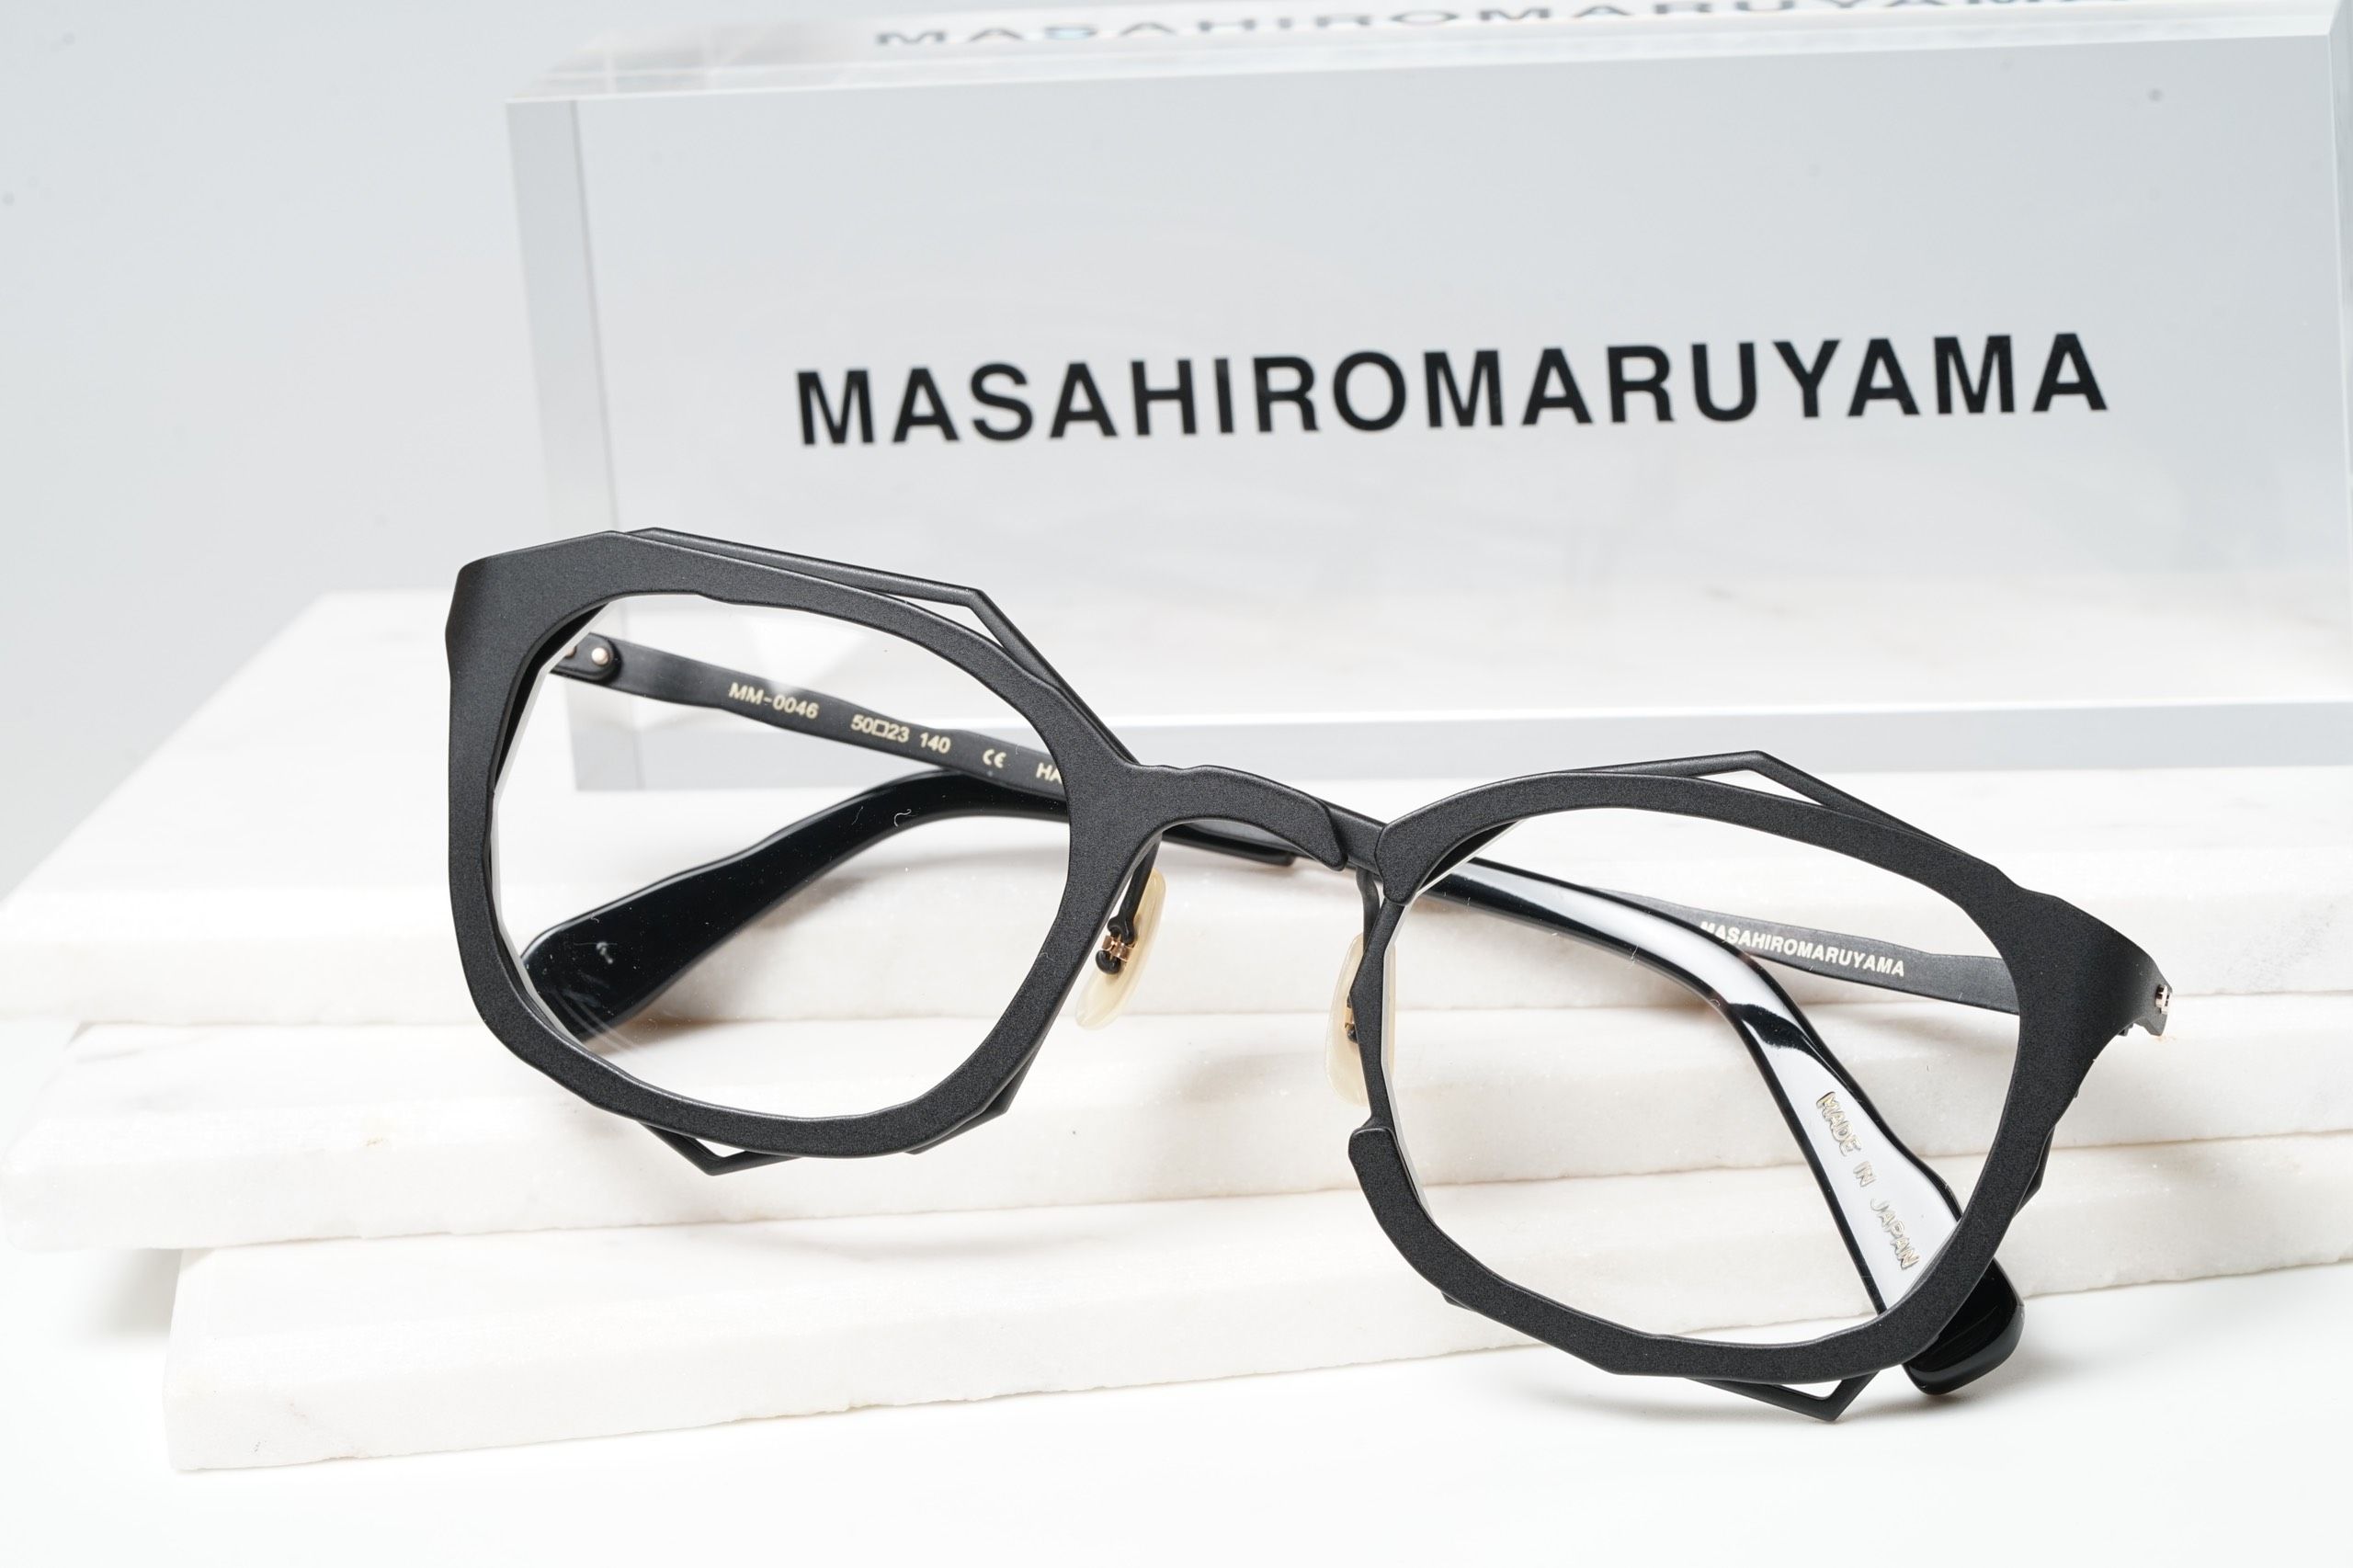 一部予約 MM-0046 - No.1 Black MASAHIROMARUYAMA rahathomedesign.com